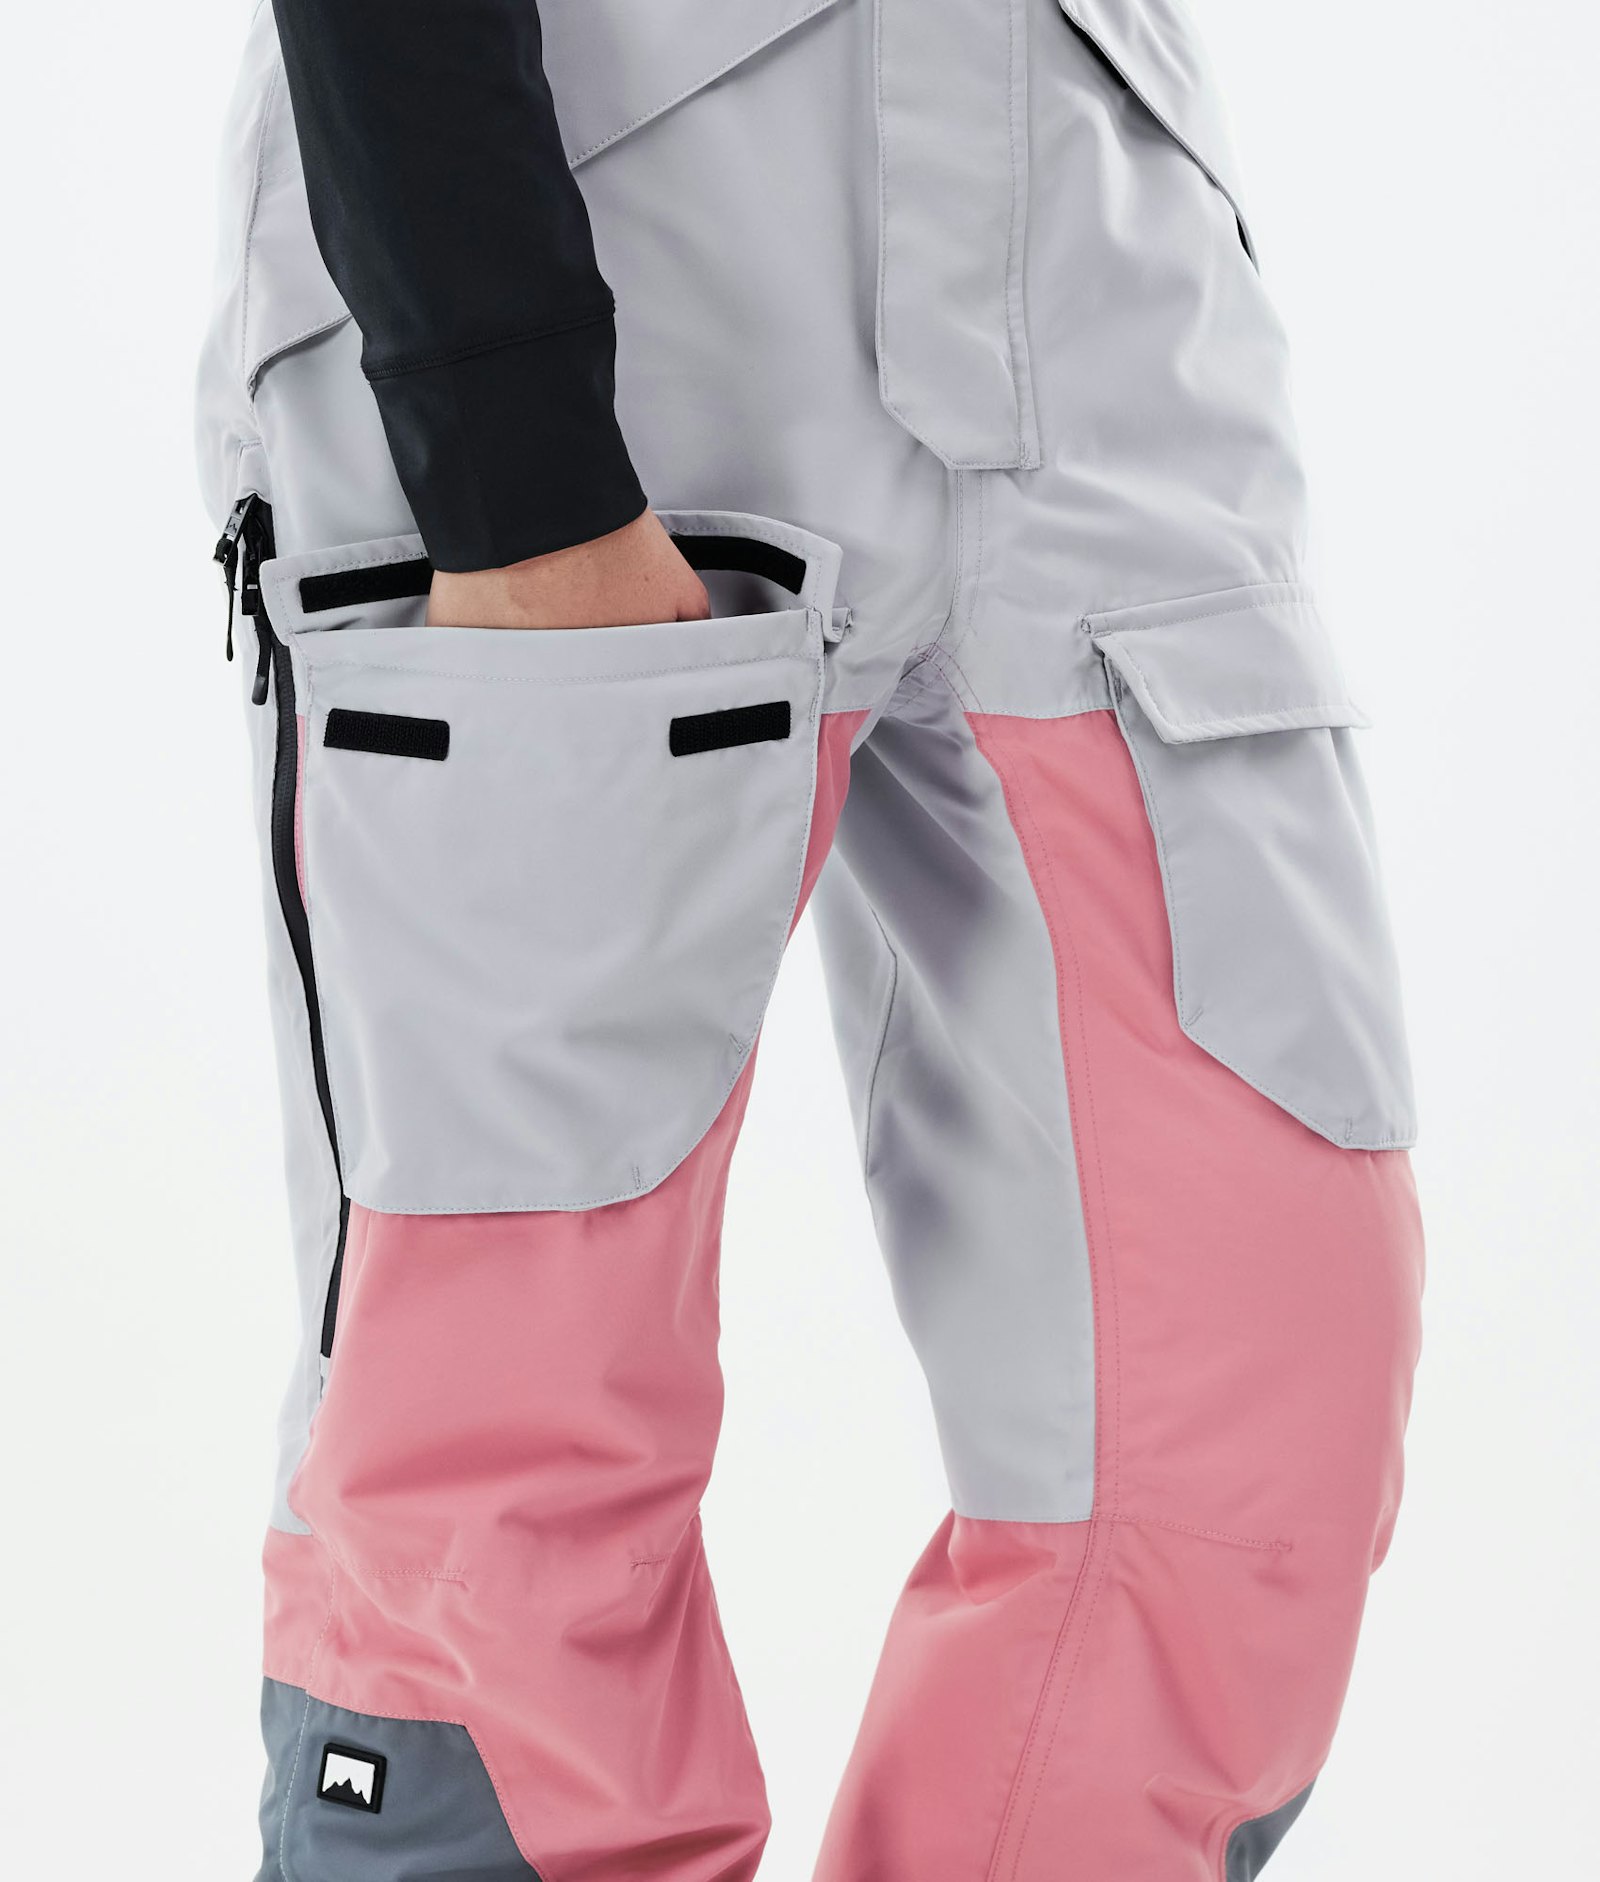 Fawk W 2021 Lasketteluhousut Naiset Light Grey/Pink/Light Pearl